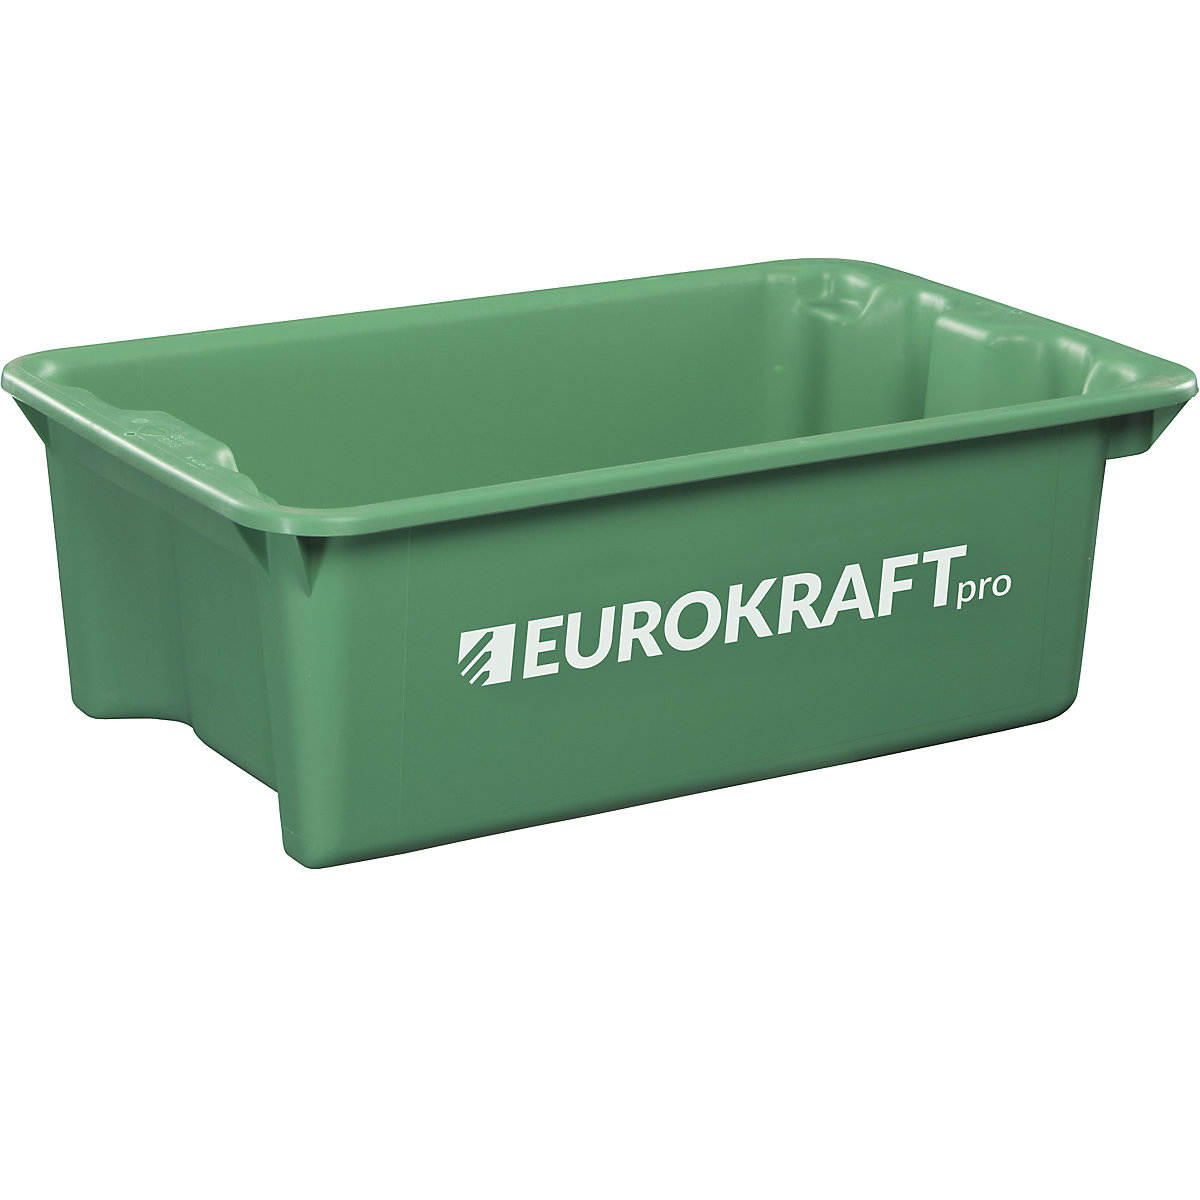 Drehstapelbehälter aus lebensmittelechtem Polypropylen eurokraft pro, Inhalt 34 Liter, VE 3 Stk, Wände und Boden geschlossen, grün